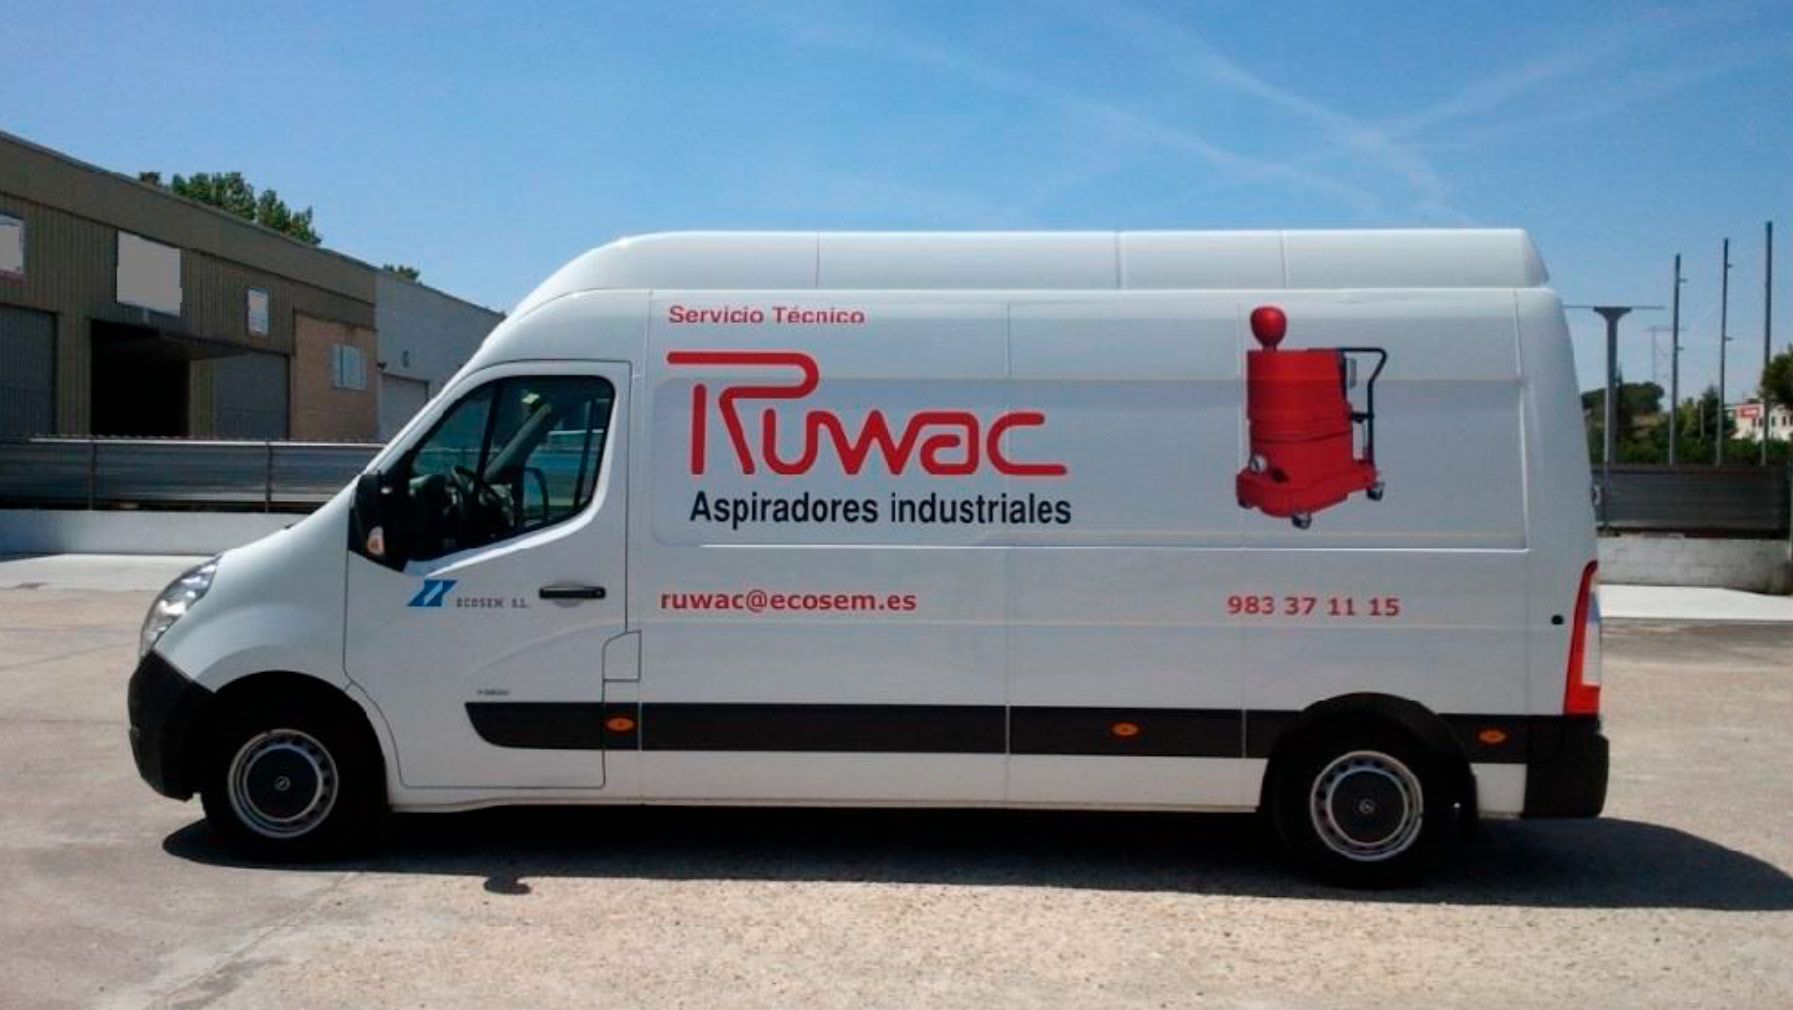 Servicio de asistencia técnica oficial de la marca Ruwac